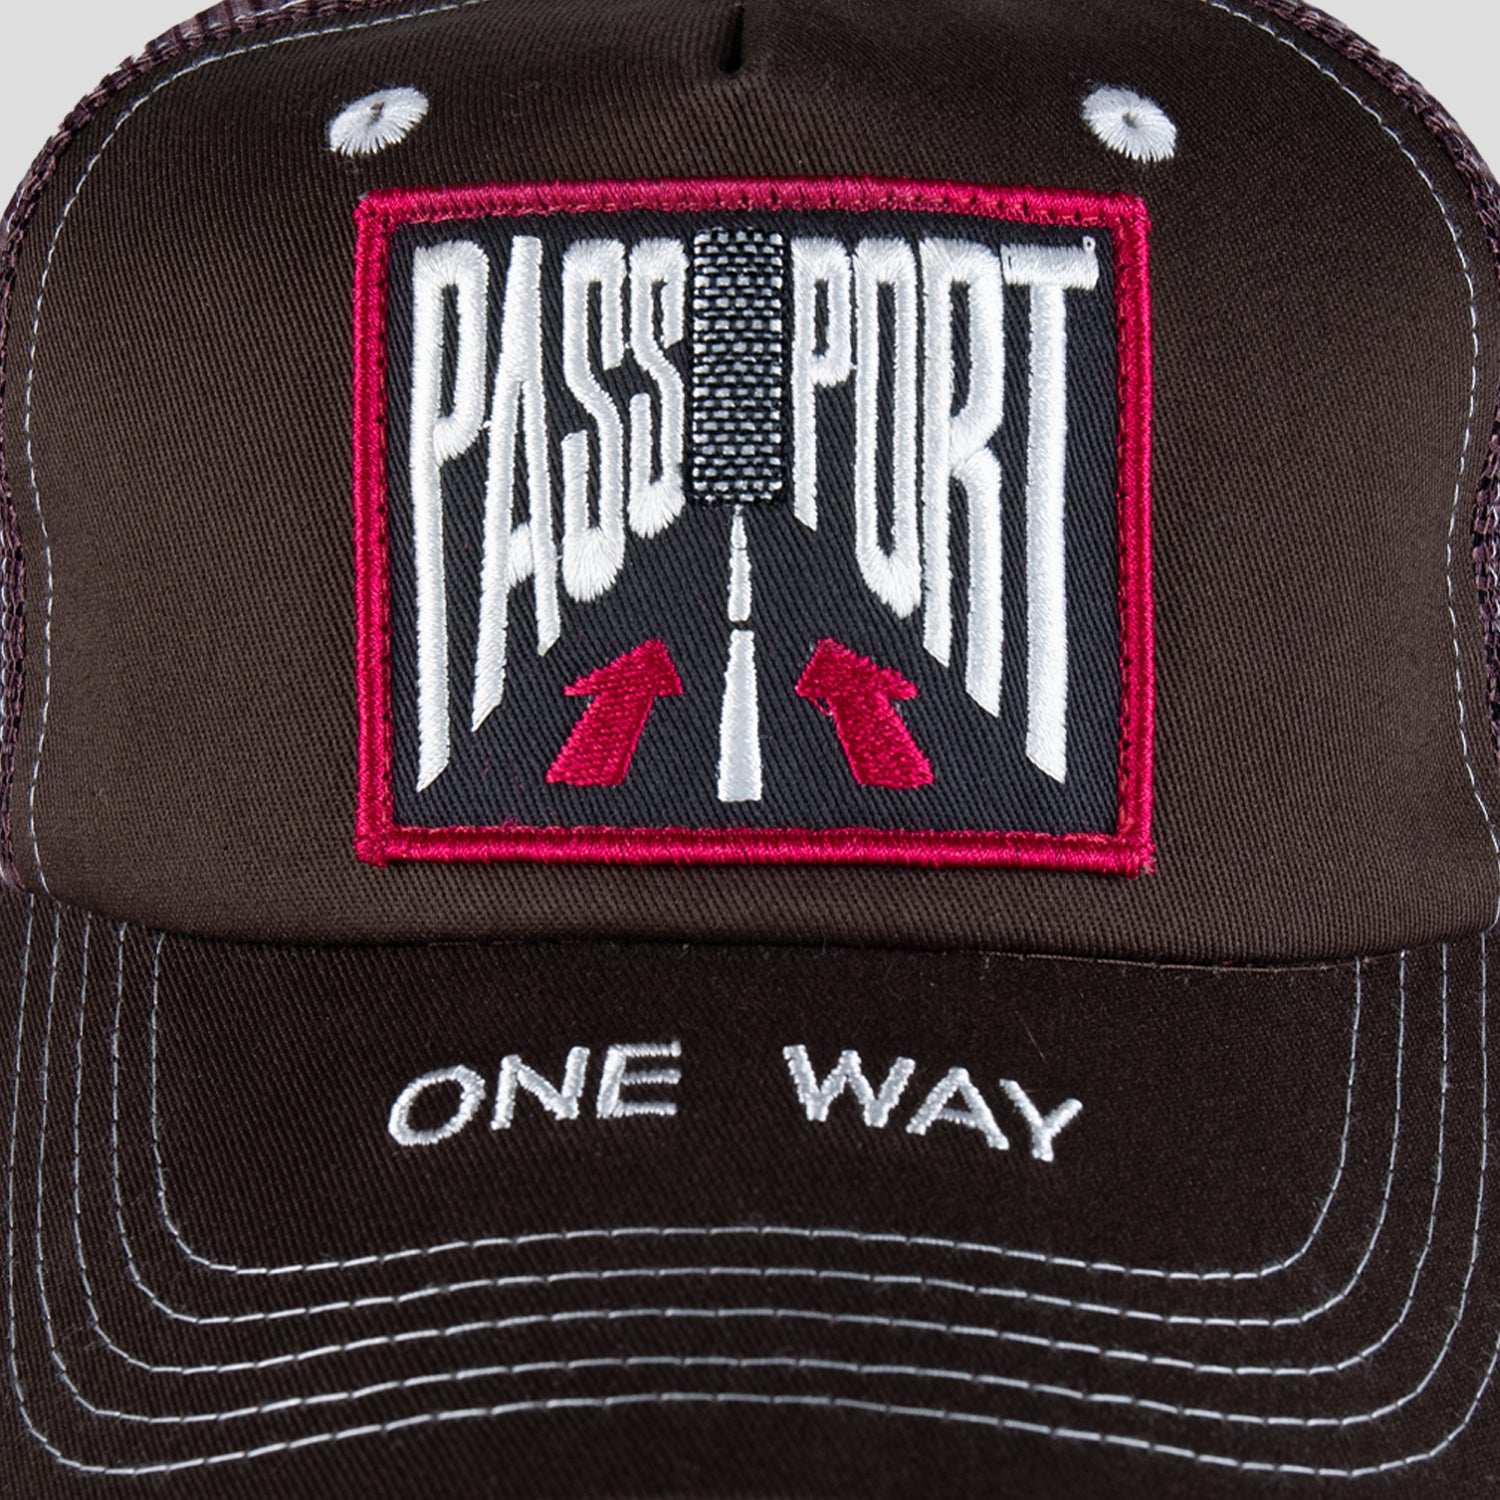 Pass~Port One Way Packers Trucker Cap - Chocolate